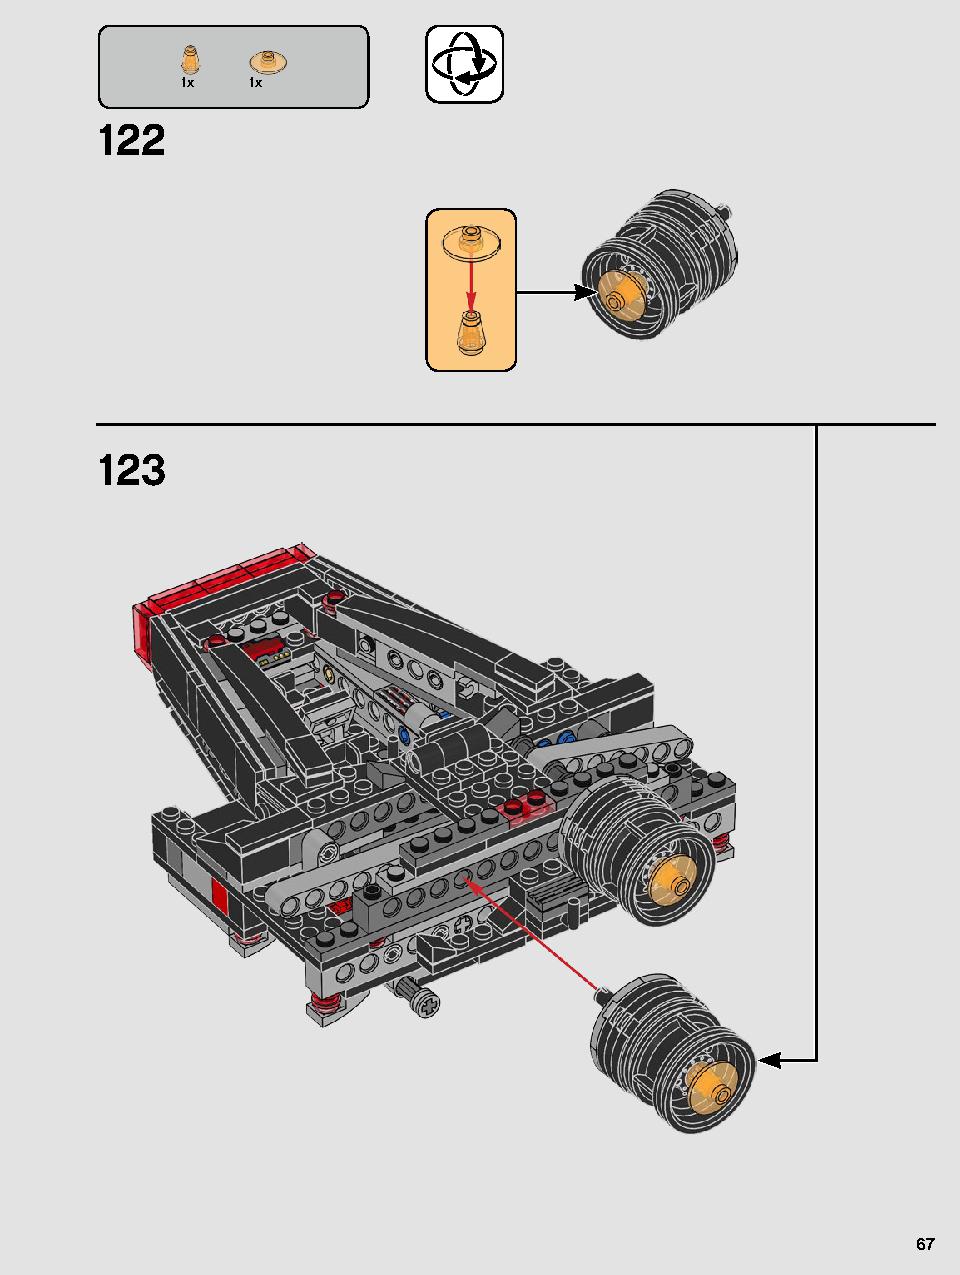 스타워즈 카일로 렌의 셔틀™ 75256 레고 세트 제품정보 레고 조립설명서 67 page